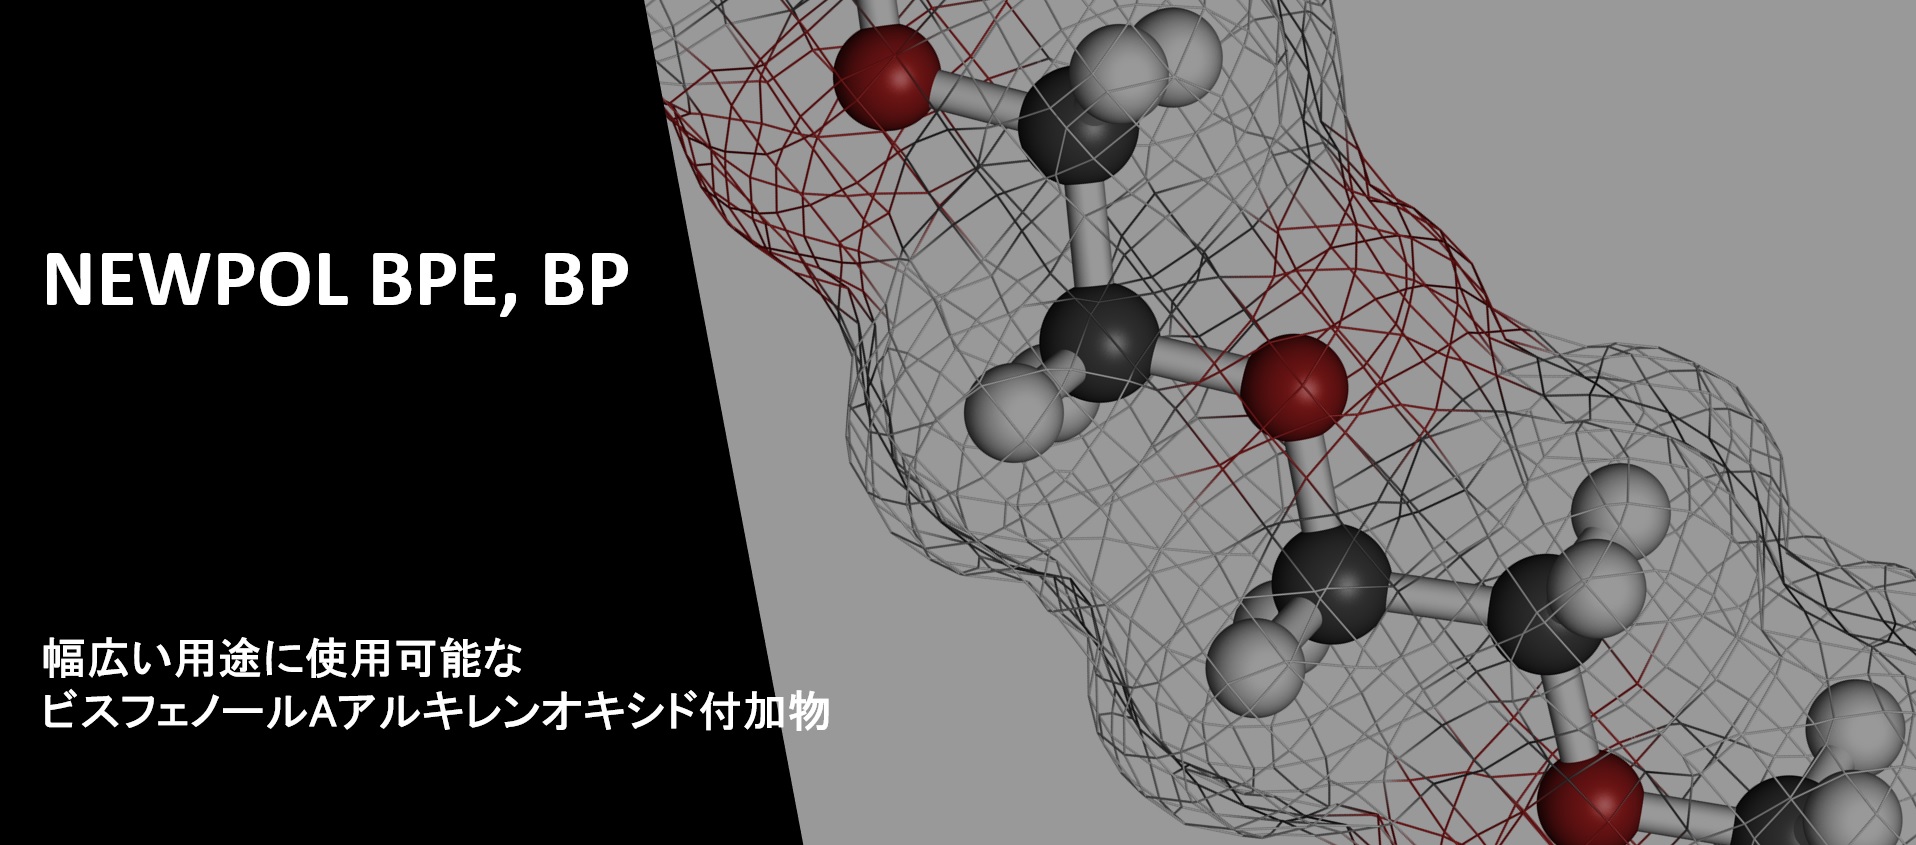 ビスフェノールAアルキレンオキシド付加物『ニューポール BPE、BP』紹介ページを公開いたしました。